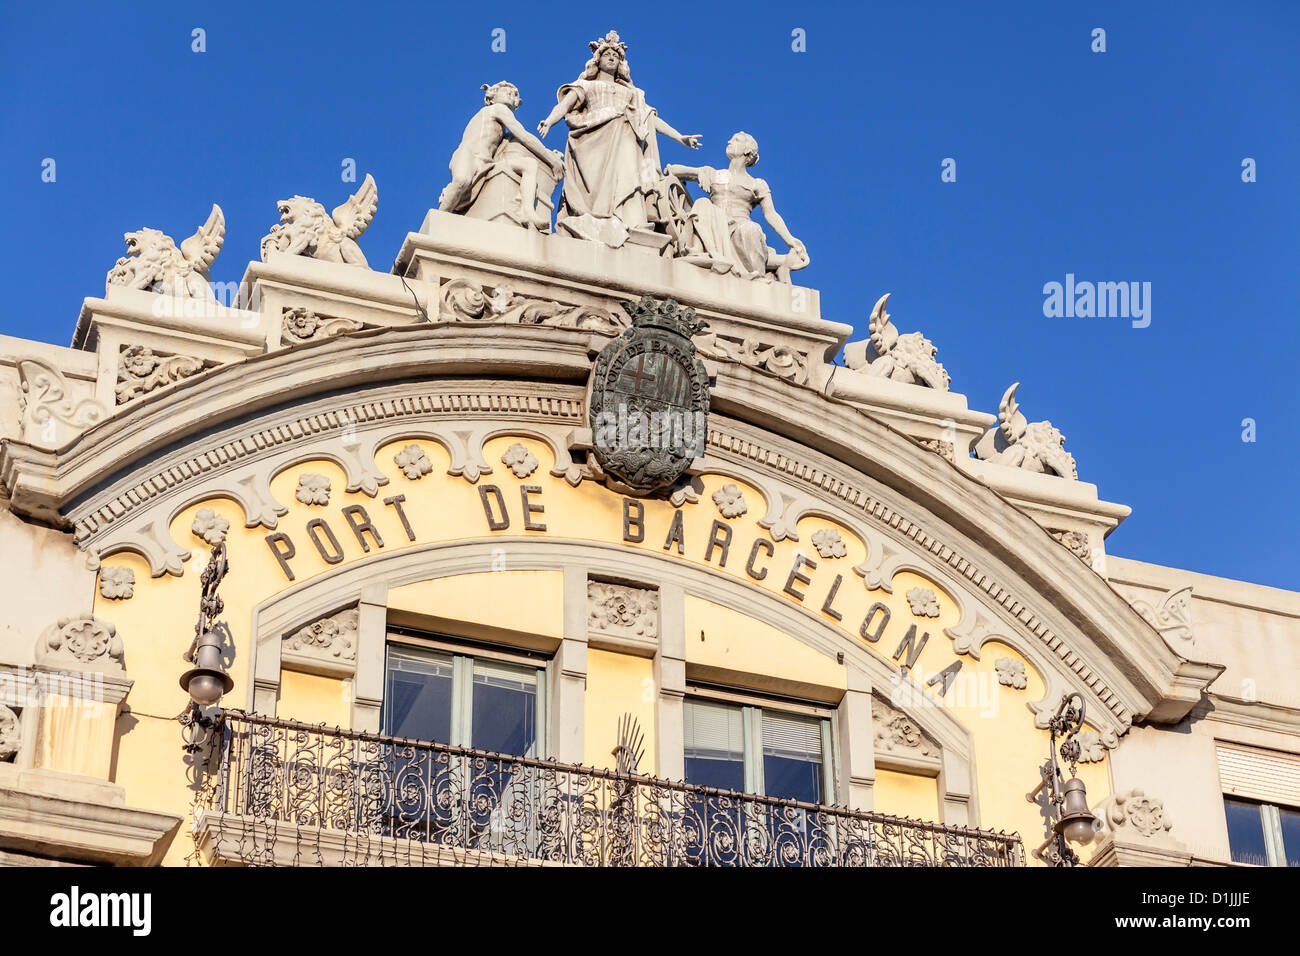 barcelona,catalonia,spain Stock Photo